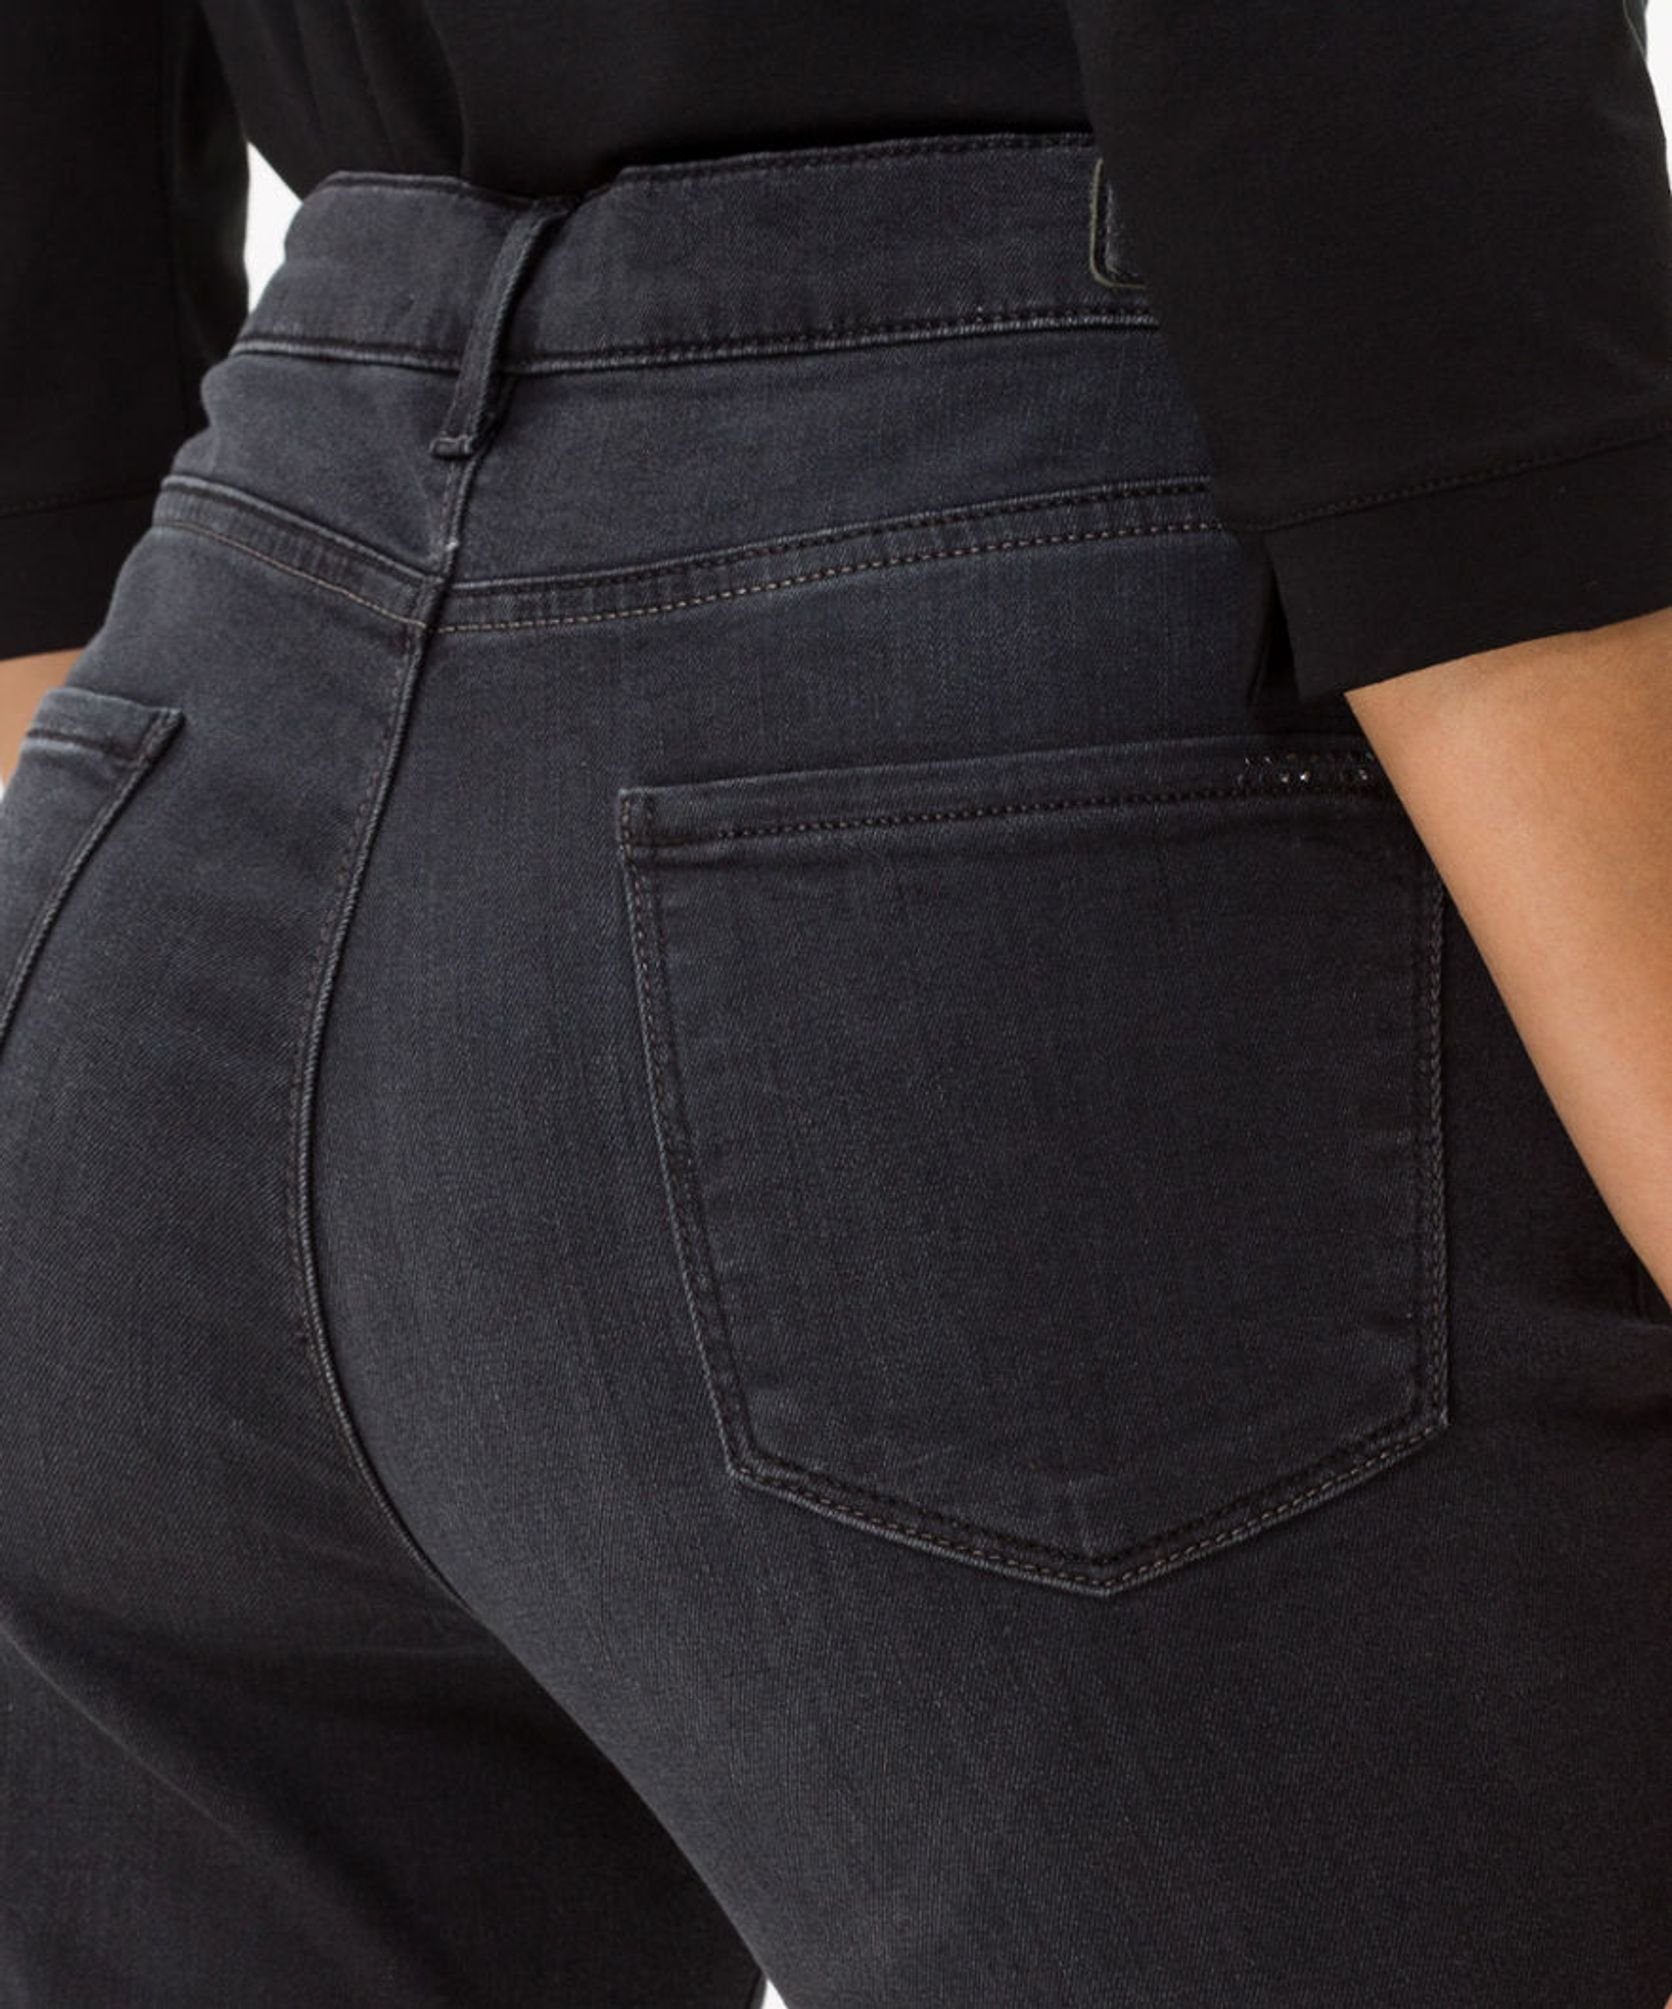 (03) 70-4000 5-Pocket-Jeans Brax used black